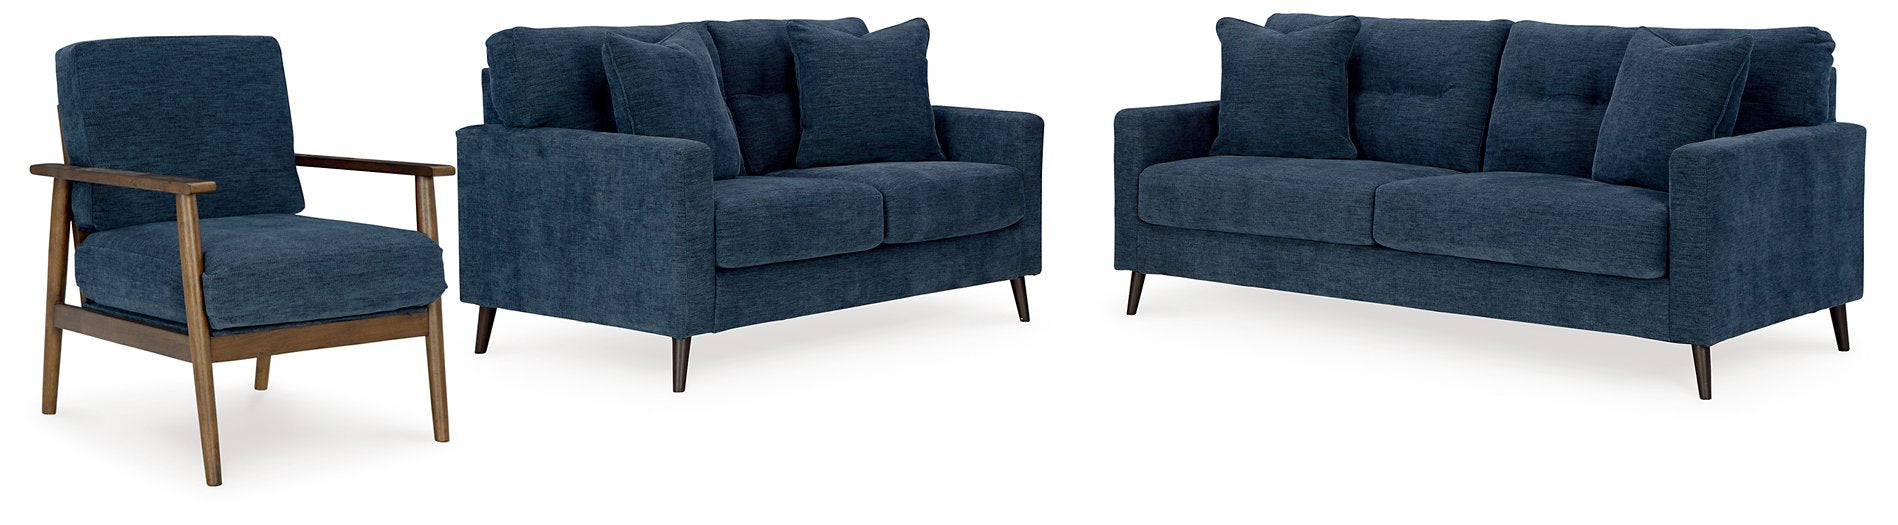 Bixler Living Room Set - All Brands Furniture (NJ)